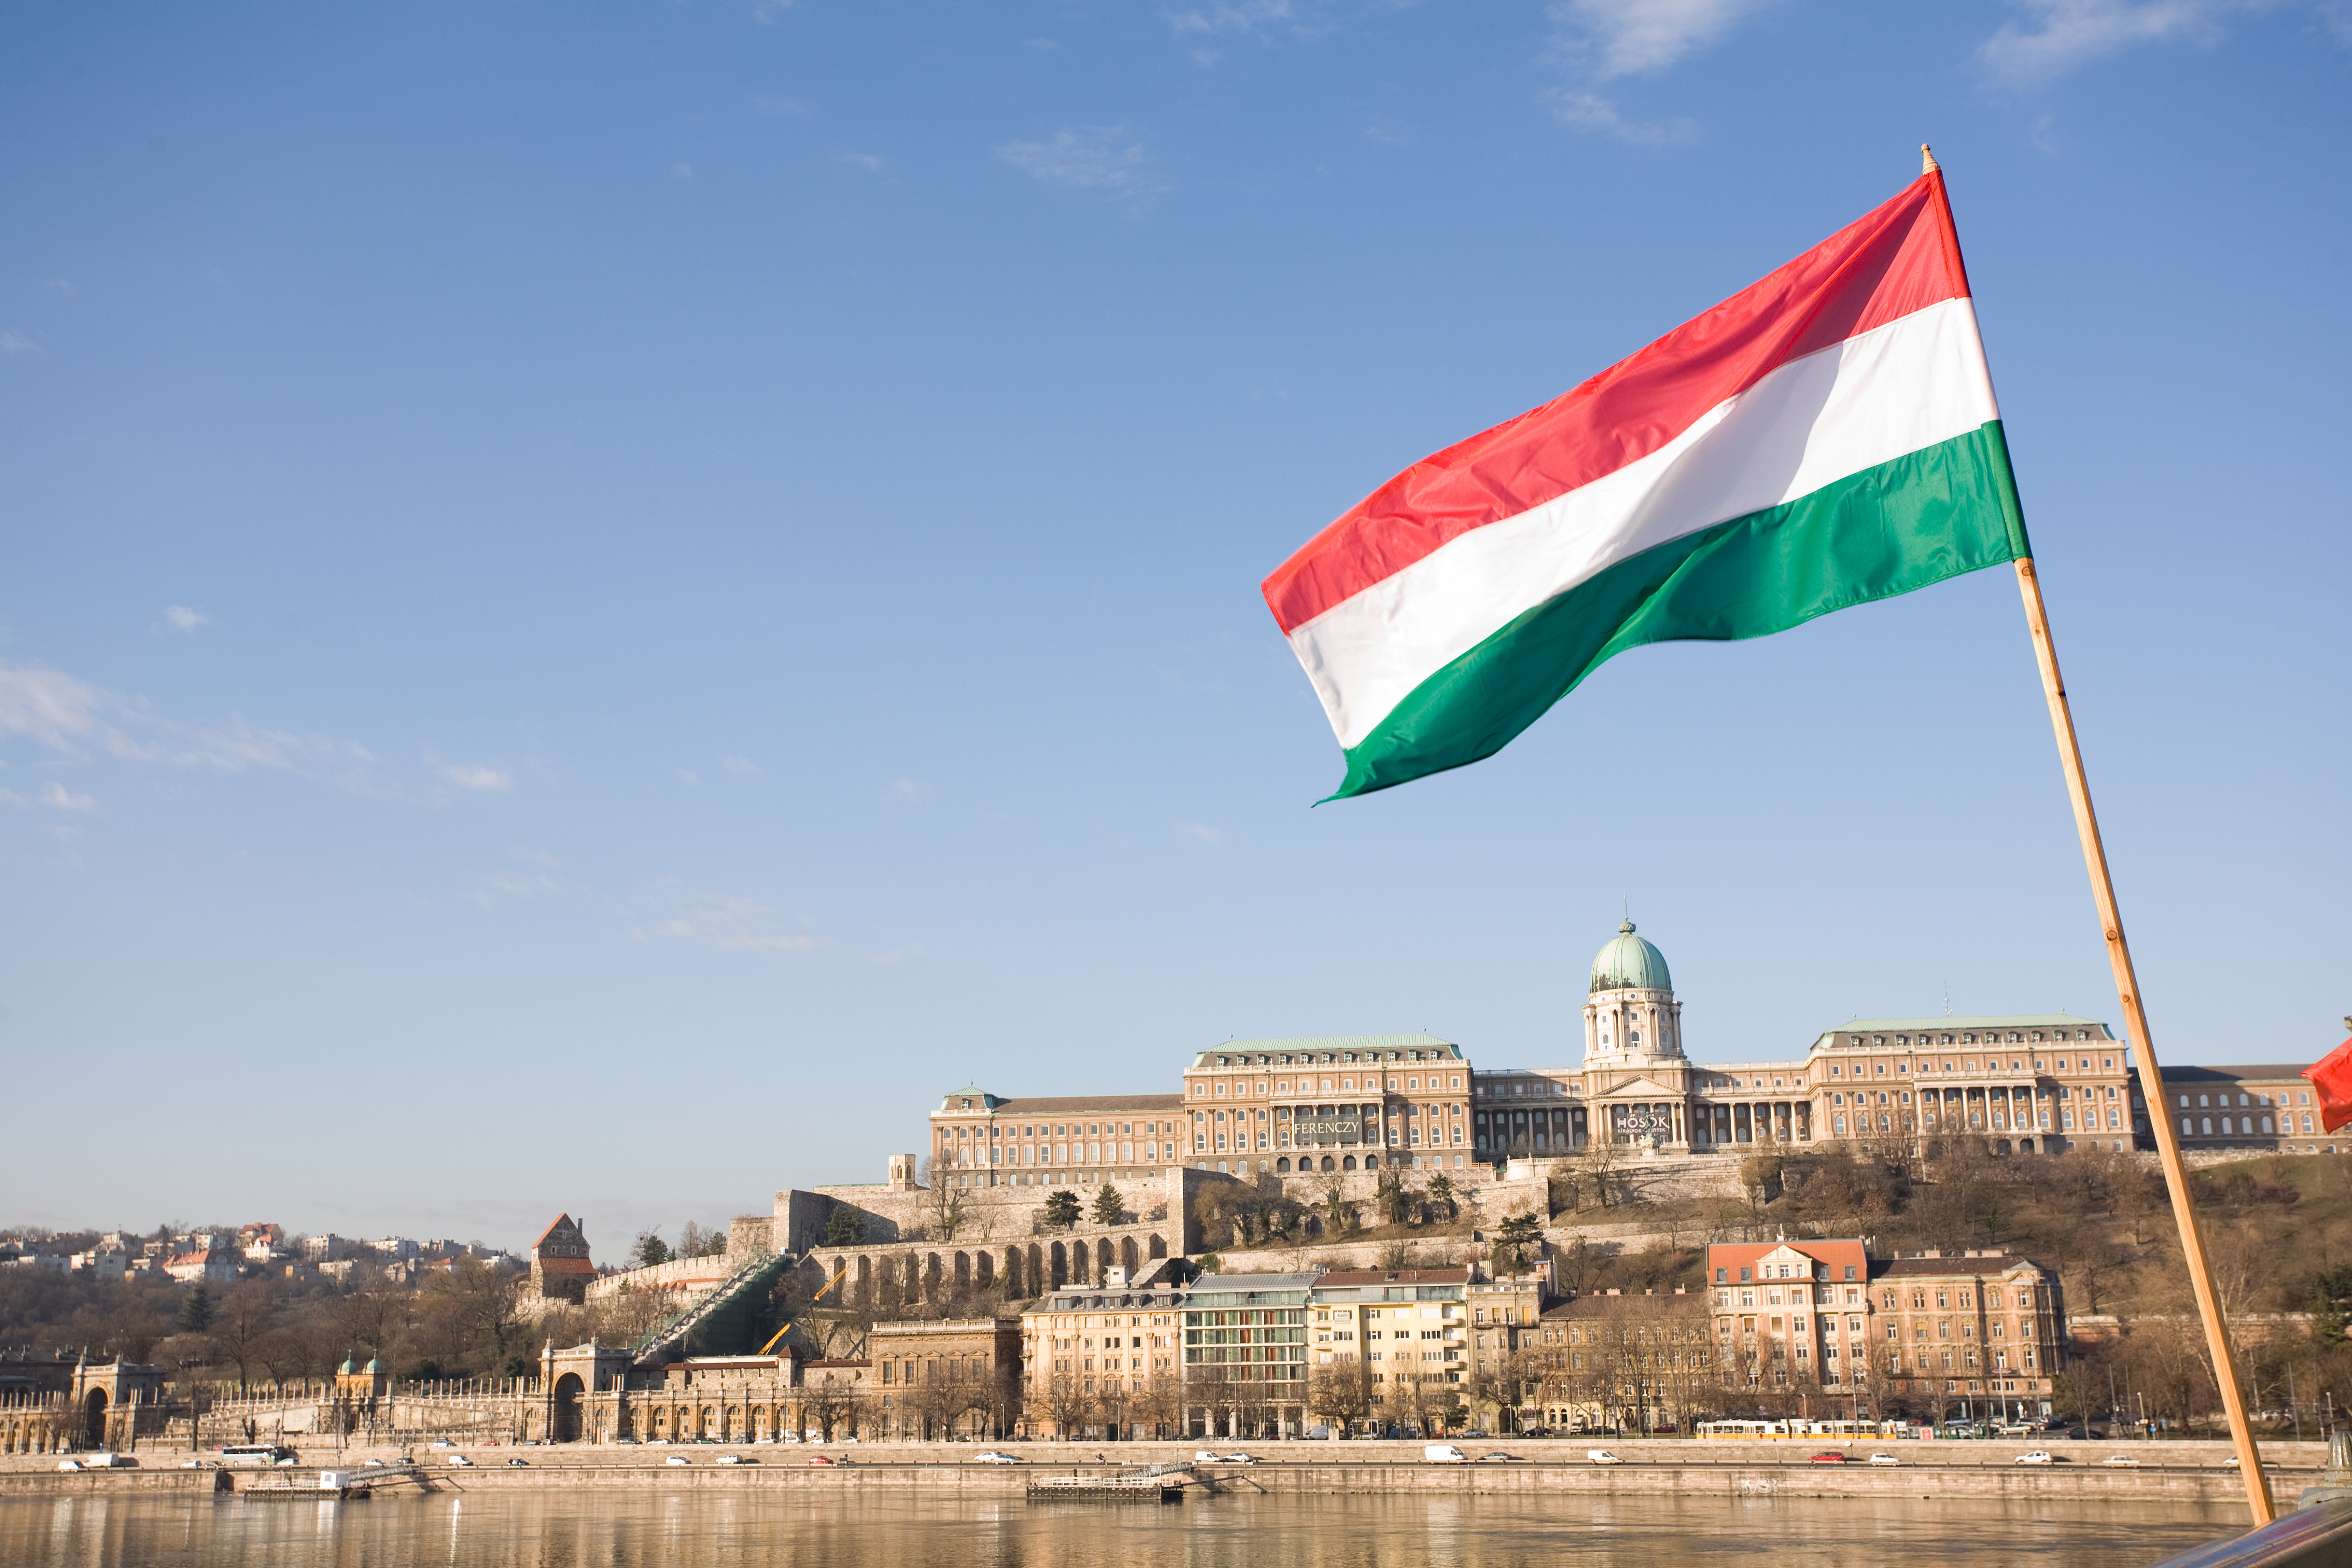 ВНЖ в Венгрии